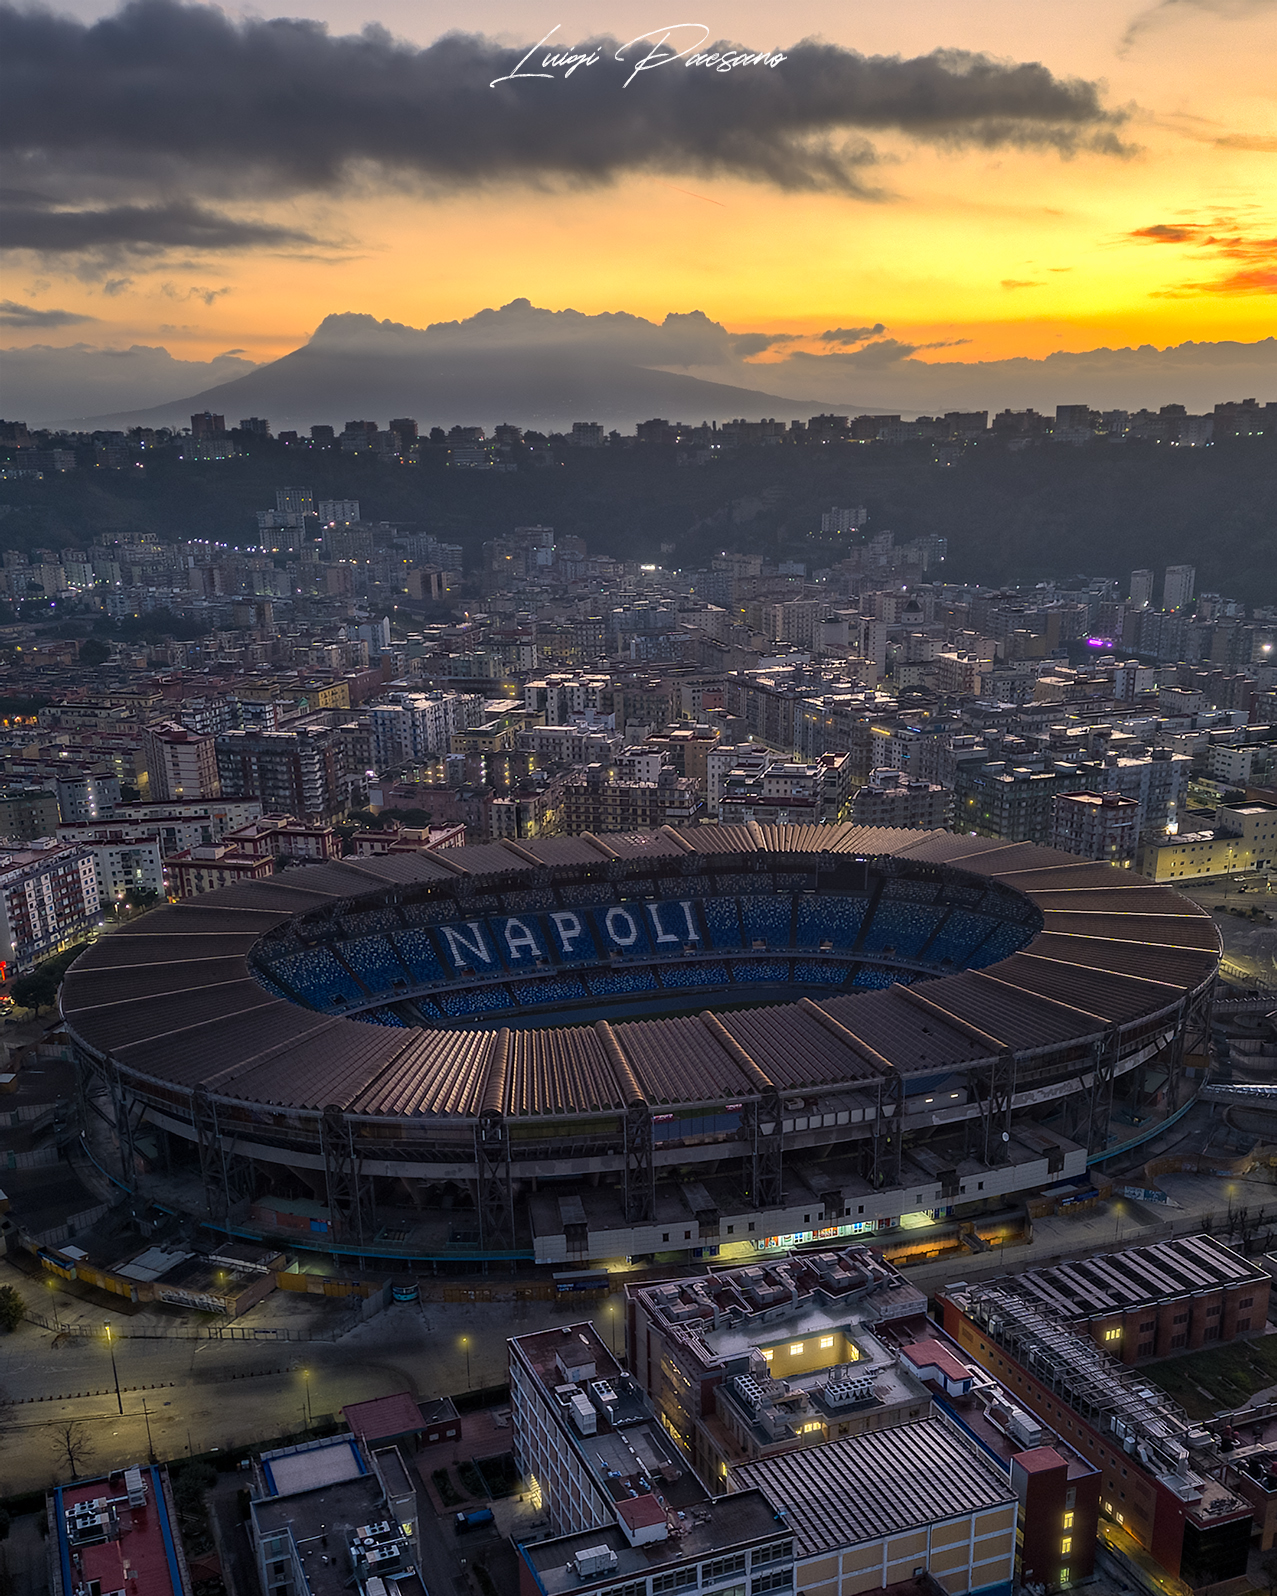 Maradona Stadium at dawn ...